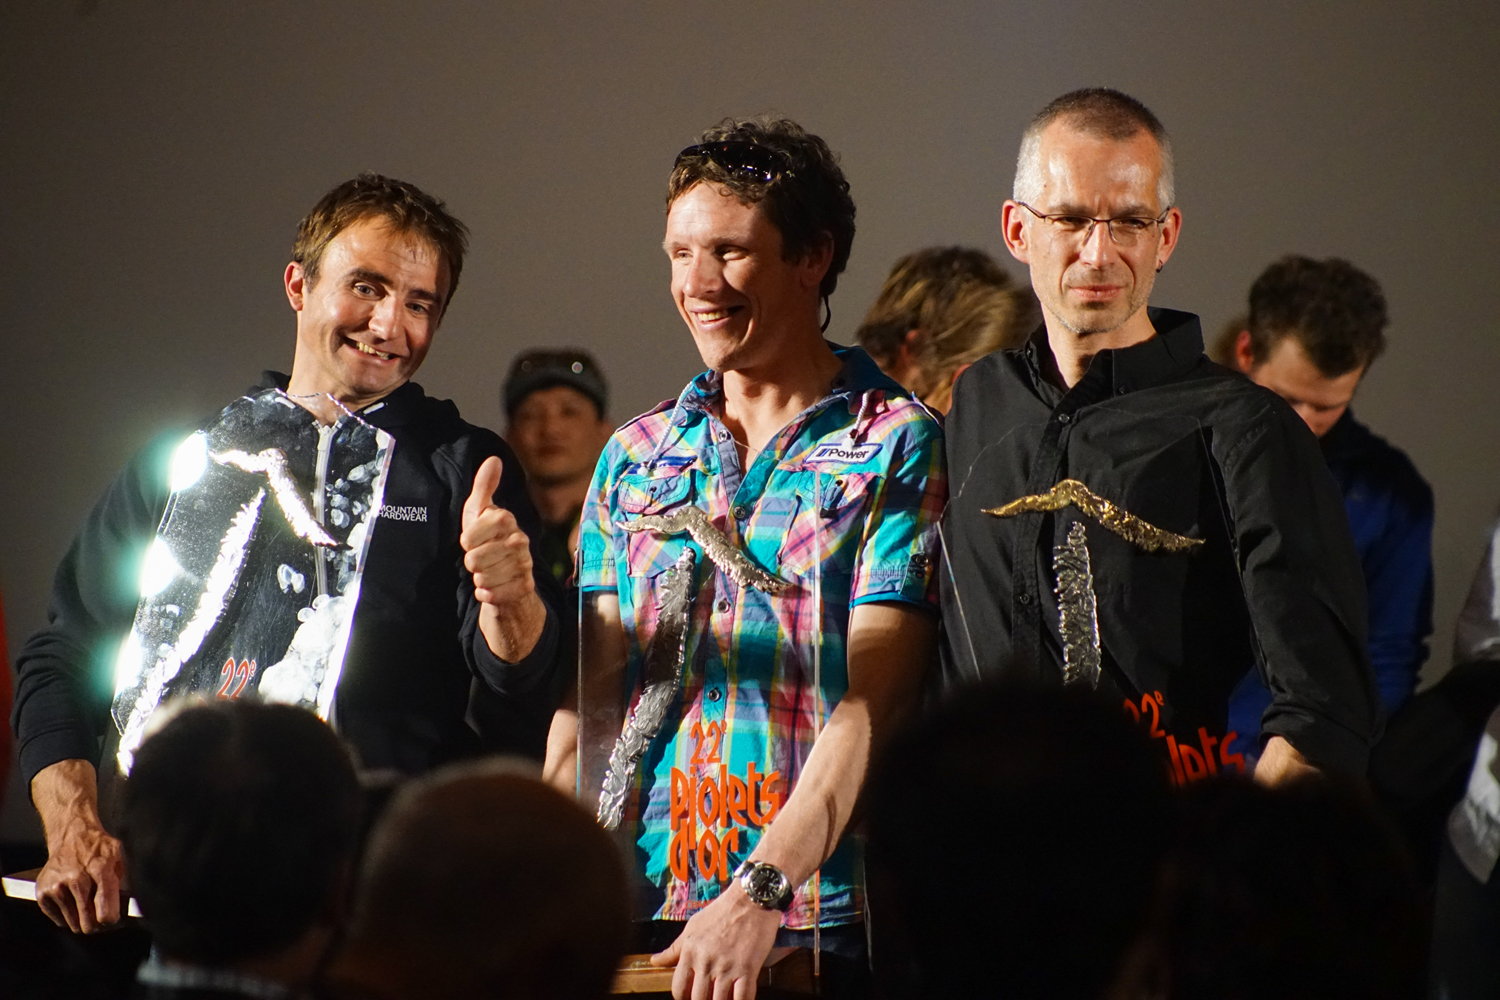 Ули Штек (Ueli Steck), Ян Вельстед (Ian Welsted) и Рафаэль Славински (Raphael Slawinski) получают награду "Золотой Ледоруб 2014" (Piolets d